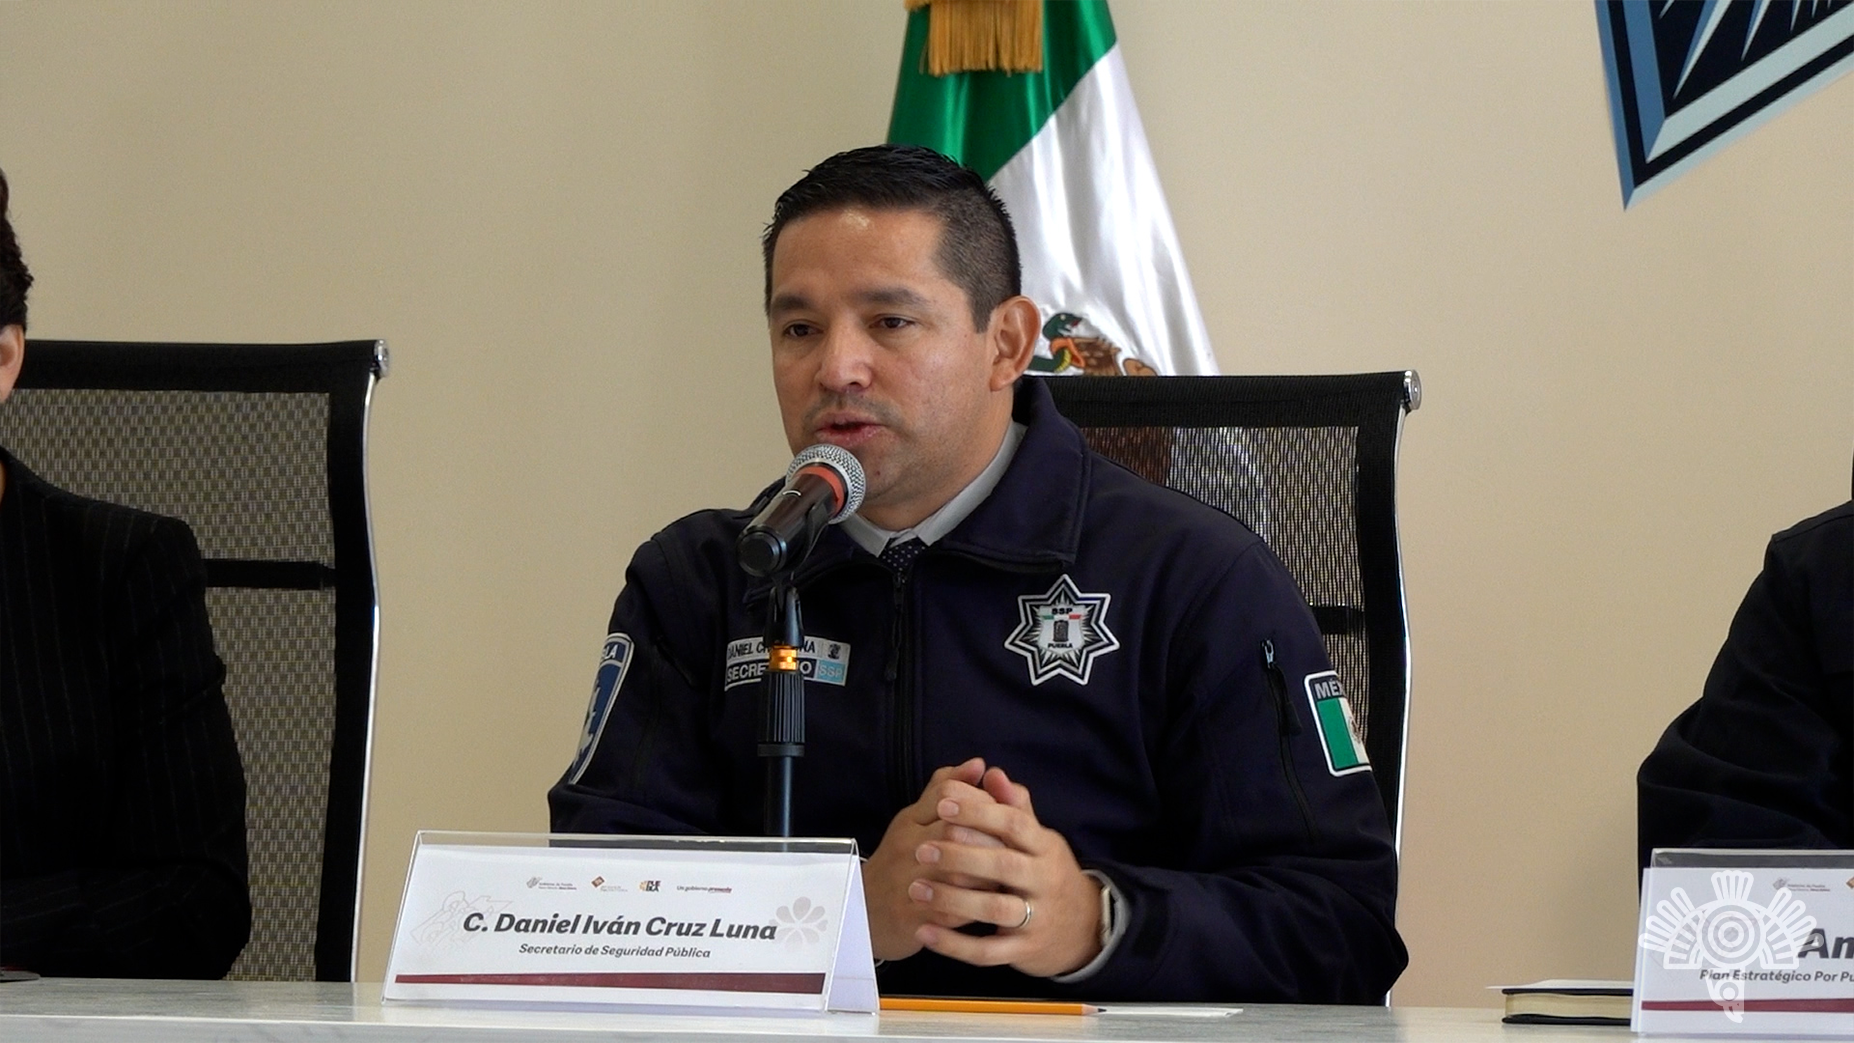 Se reforzará la vigilancia en los límites de Puebla y Veracruz tras el caso Zoquitlán: SSP